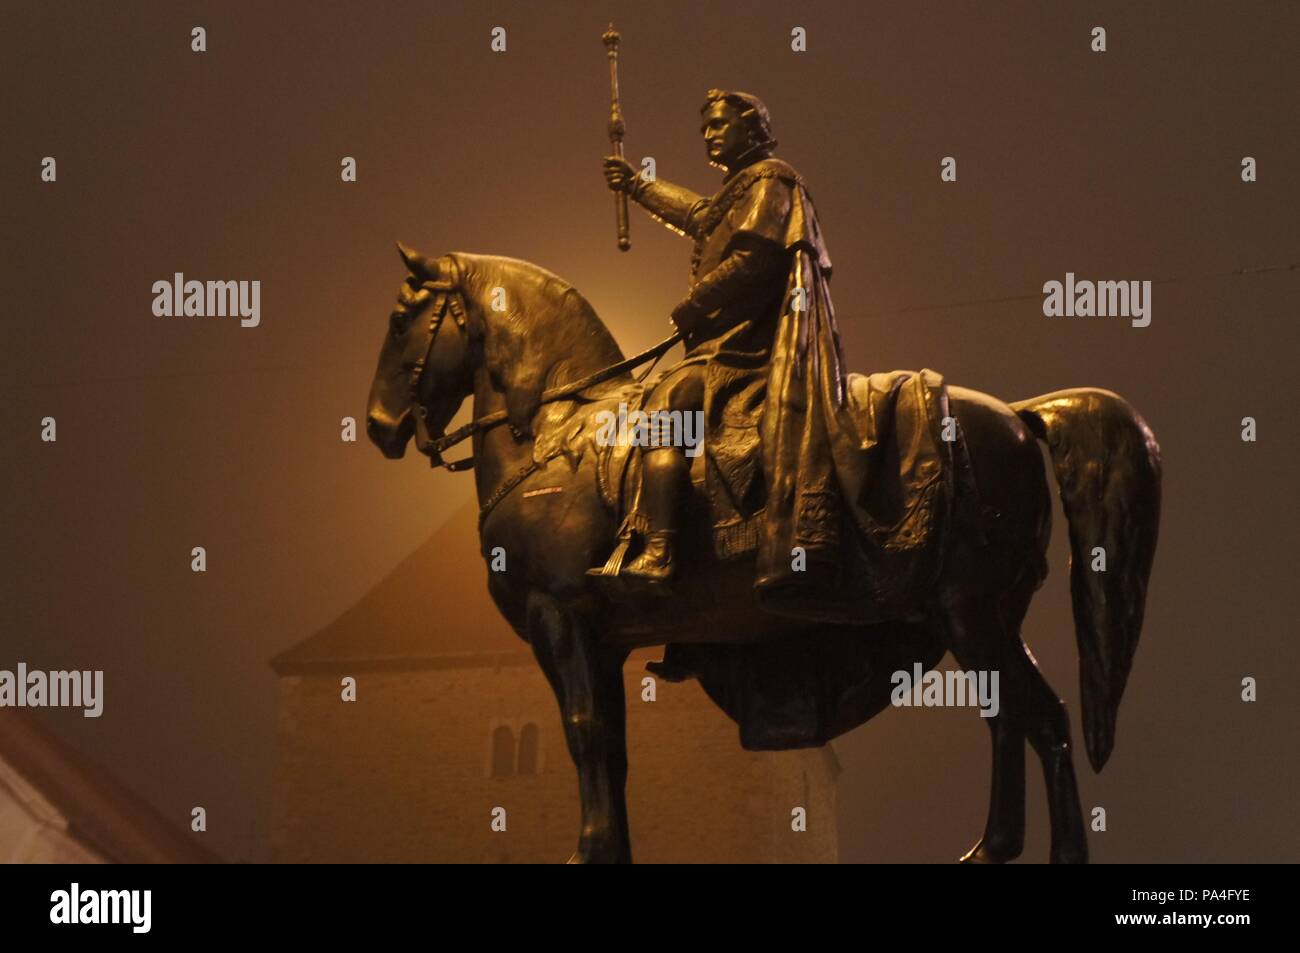 La brume enveloppe la statue d'un cheval et le cavalier sur un soir de décembre froid à Regensburg, Allemagne avec une silhouette d'un bâtiment à l'arrière-plan Banque D'Images